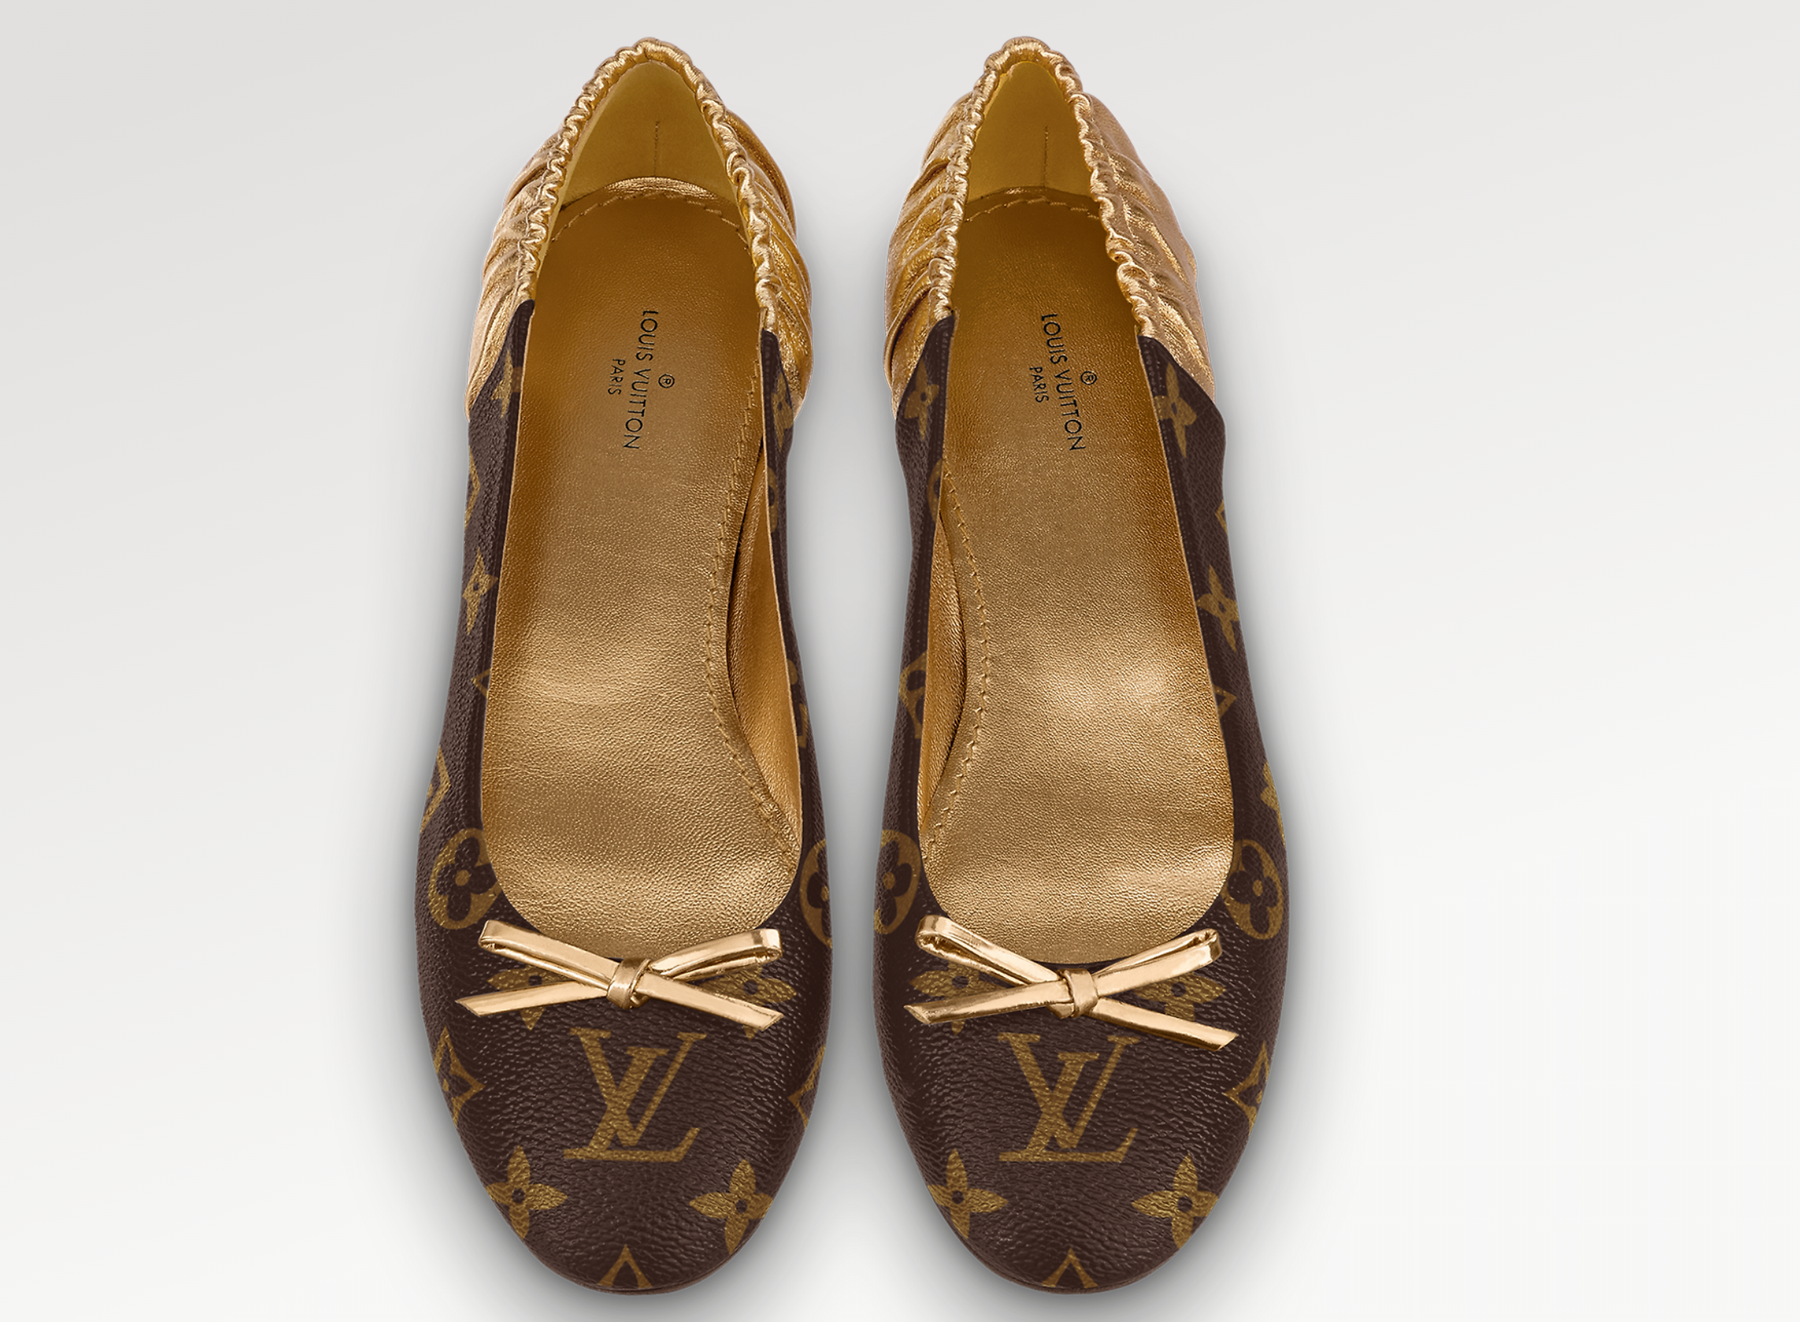 Shop Louis Vuitton Women's Ballet Shoes